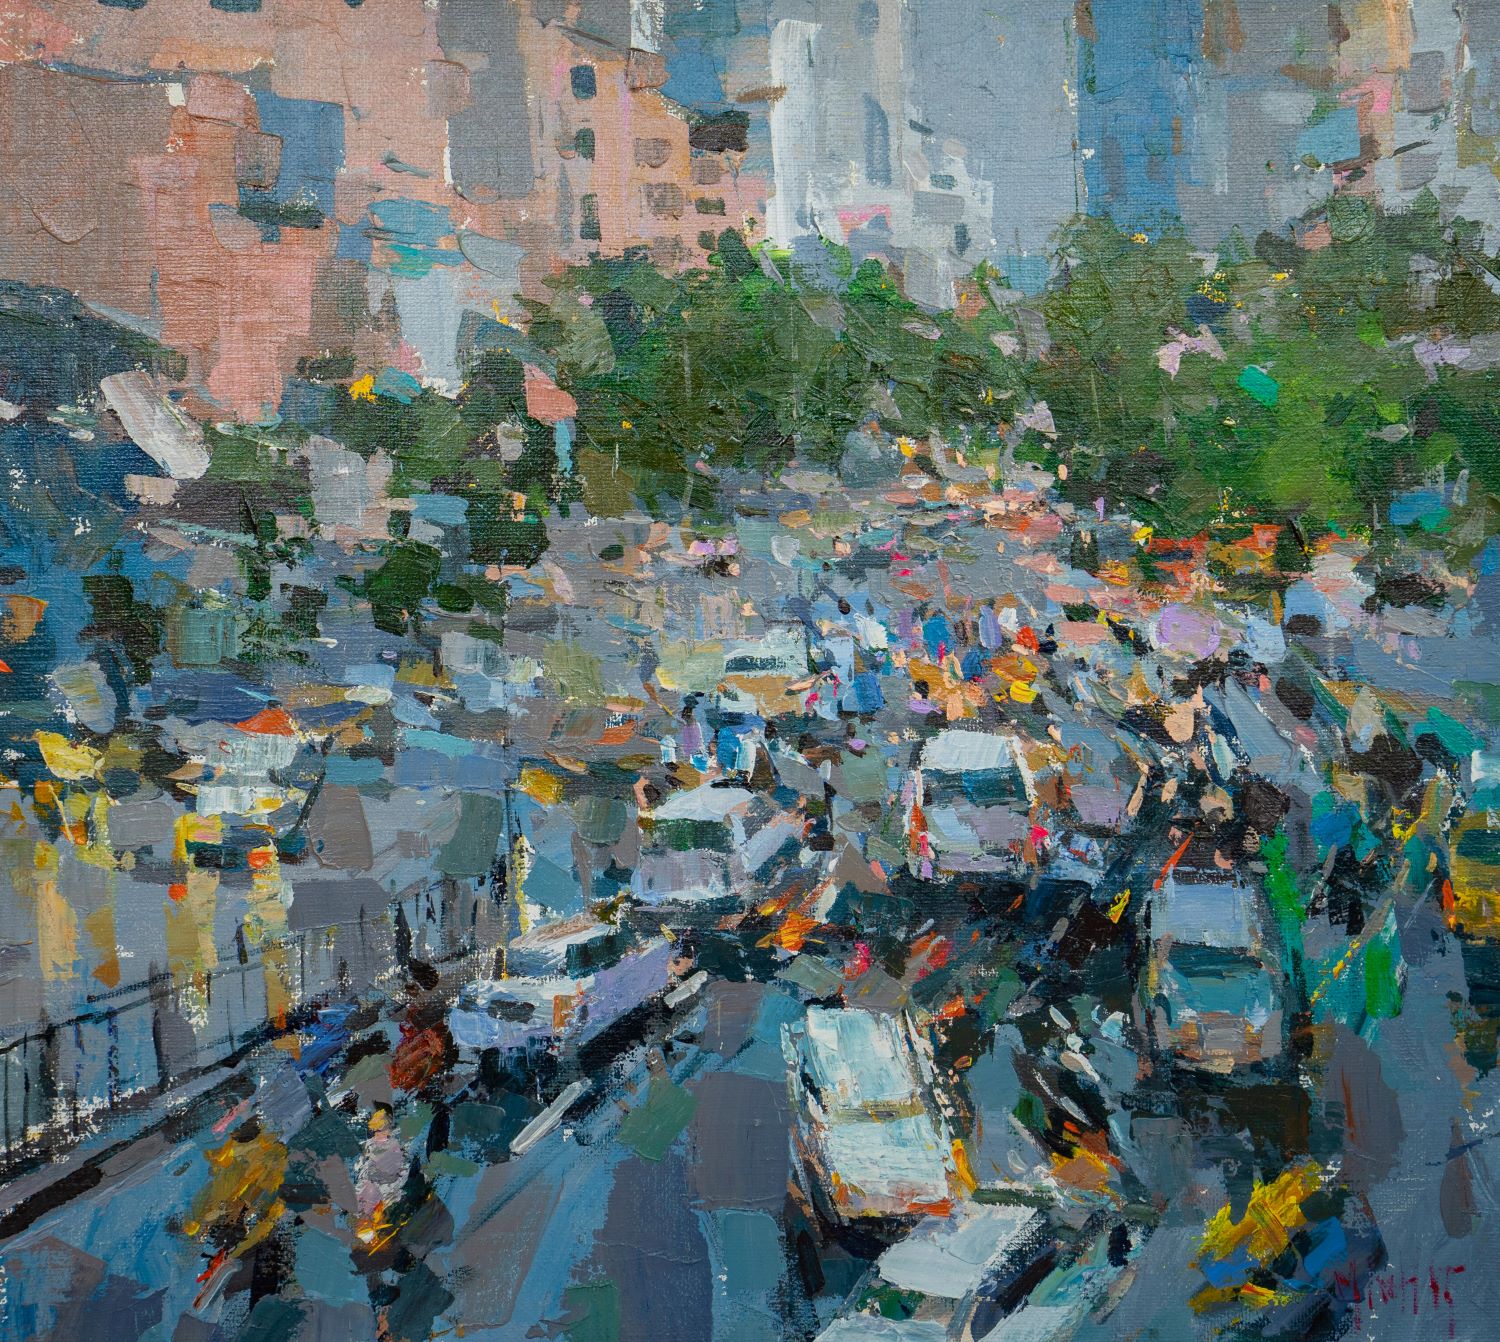 Hanoi Rush Hour III - Vietnamese Oil Painting by Artist Pham Hoang Minh